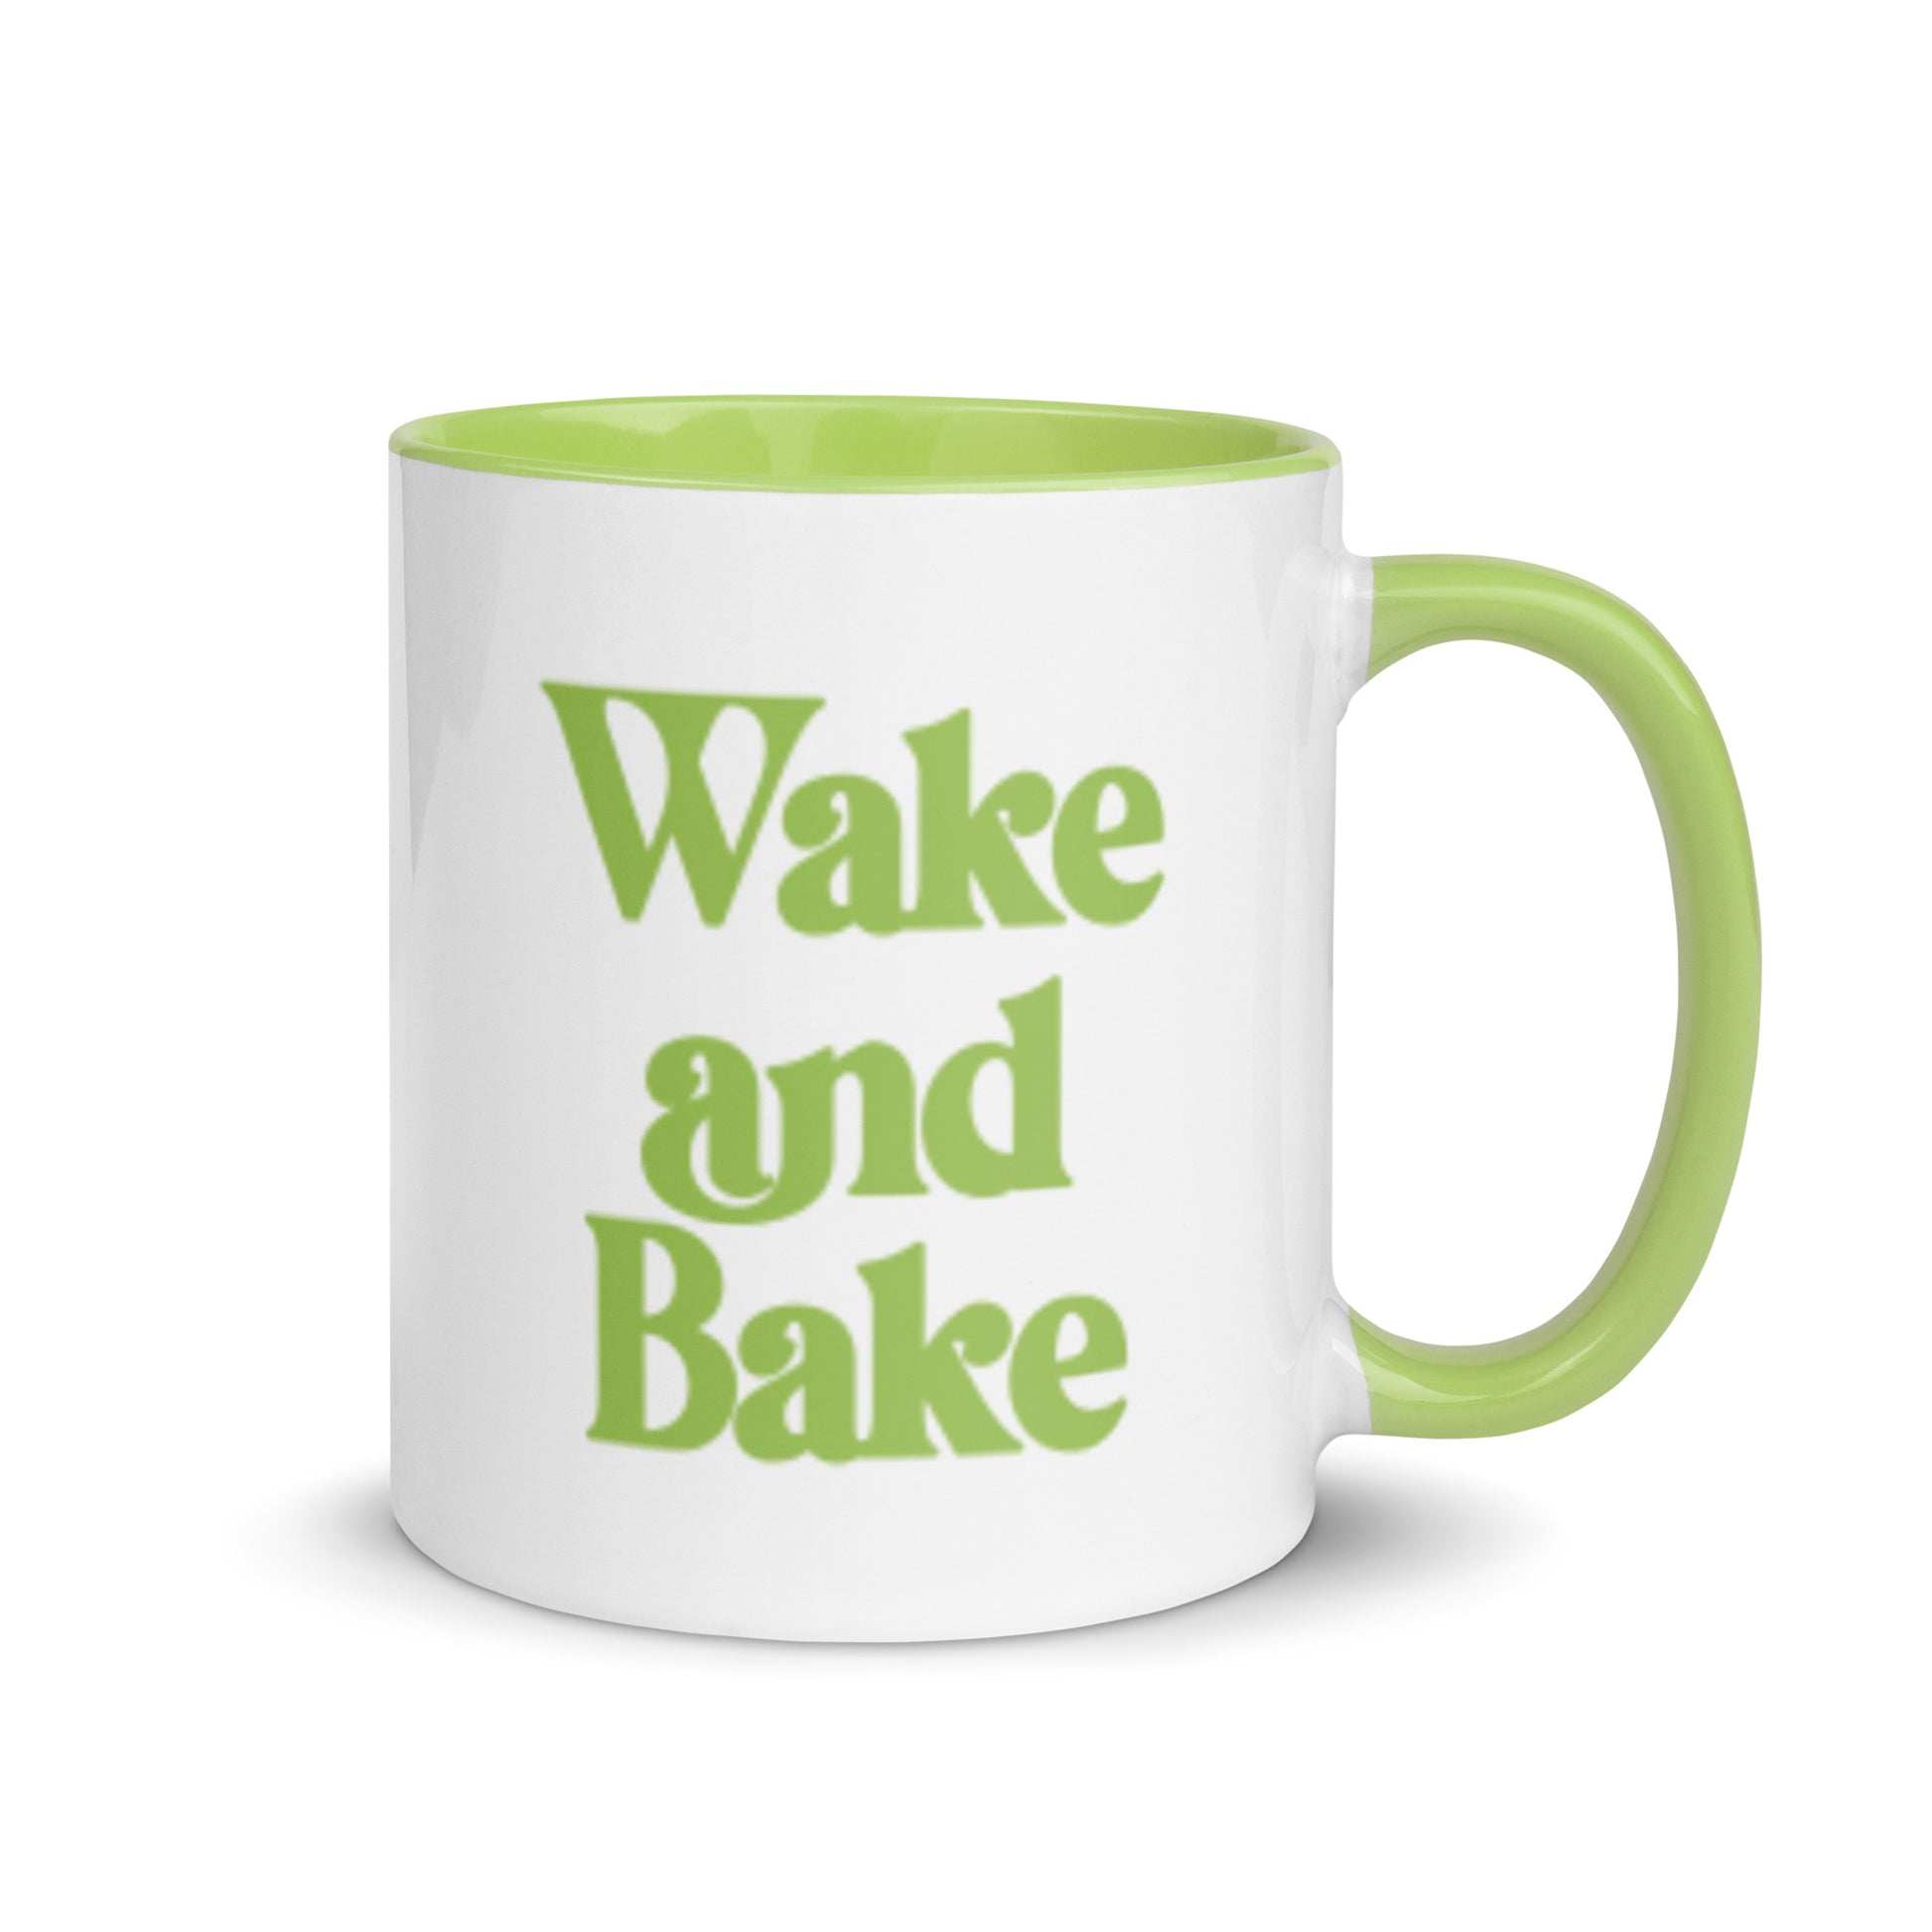 wake and bake mug funny weed gift 420 mary jane gift christmas green mug with handle 